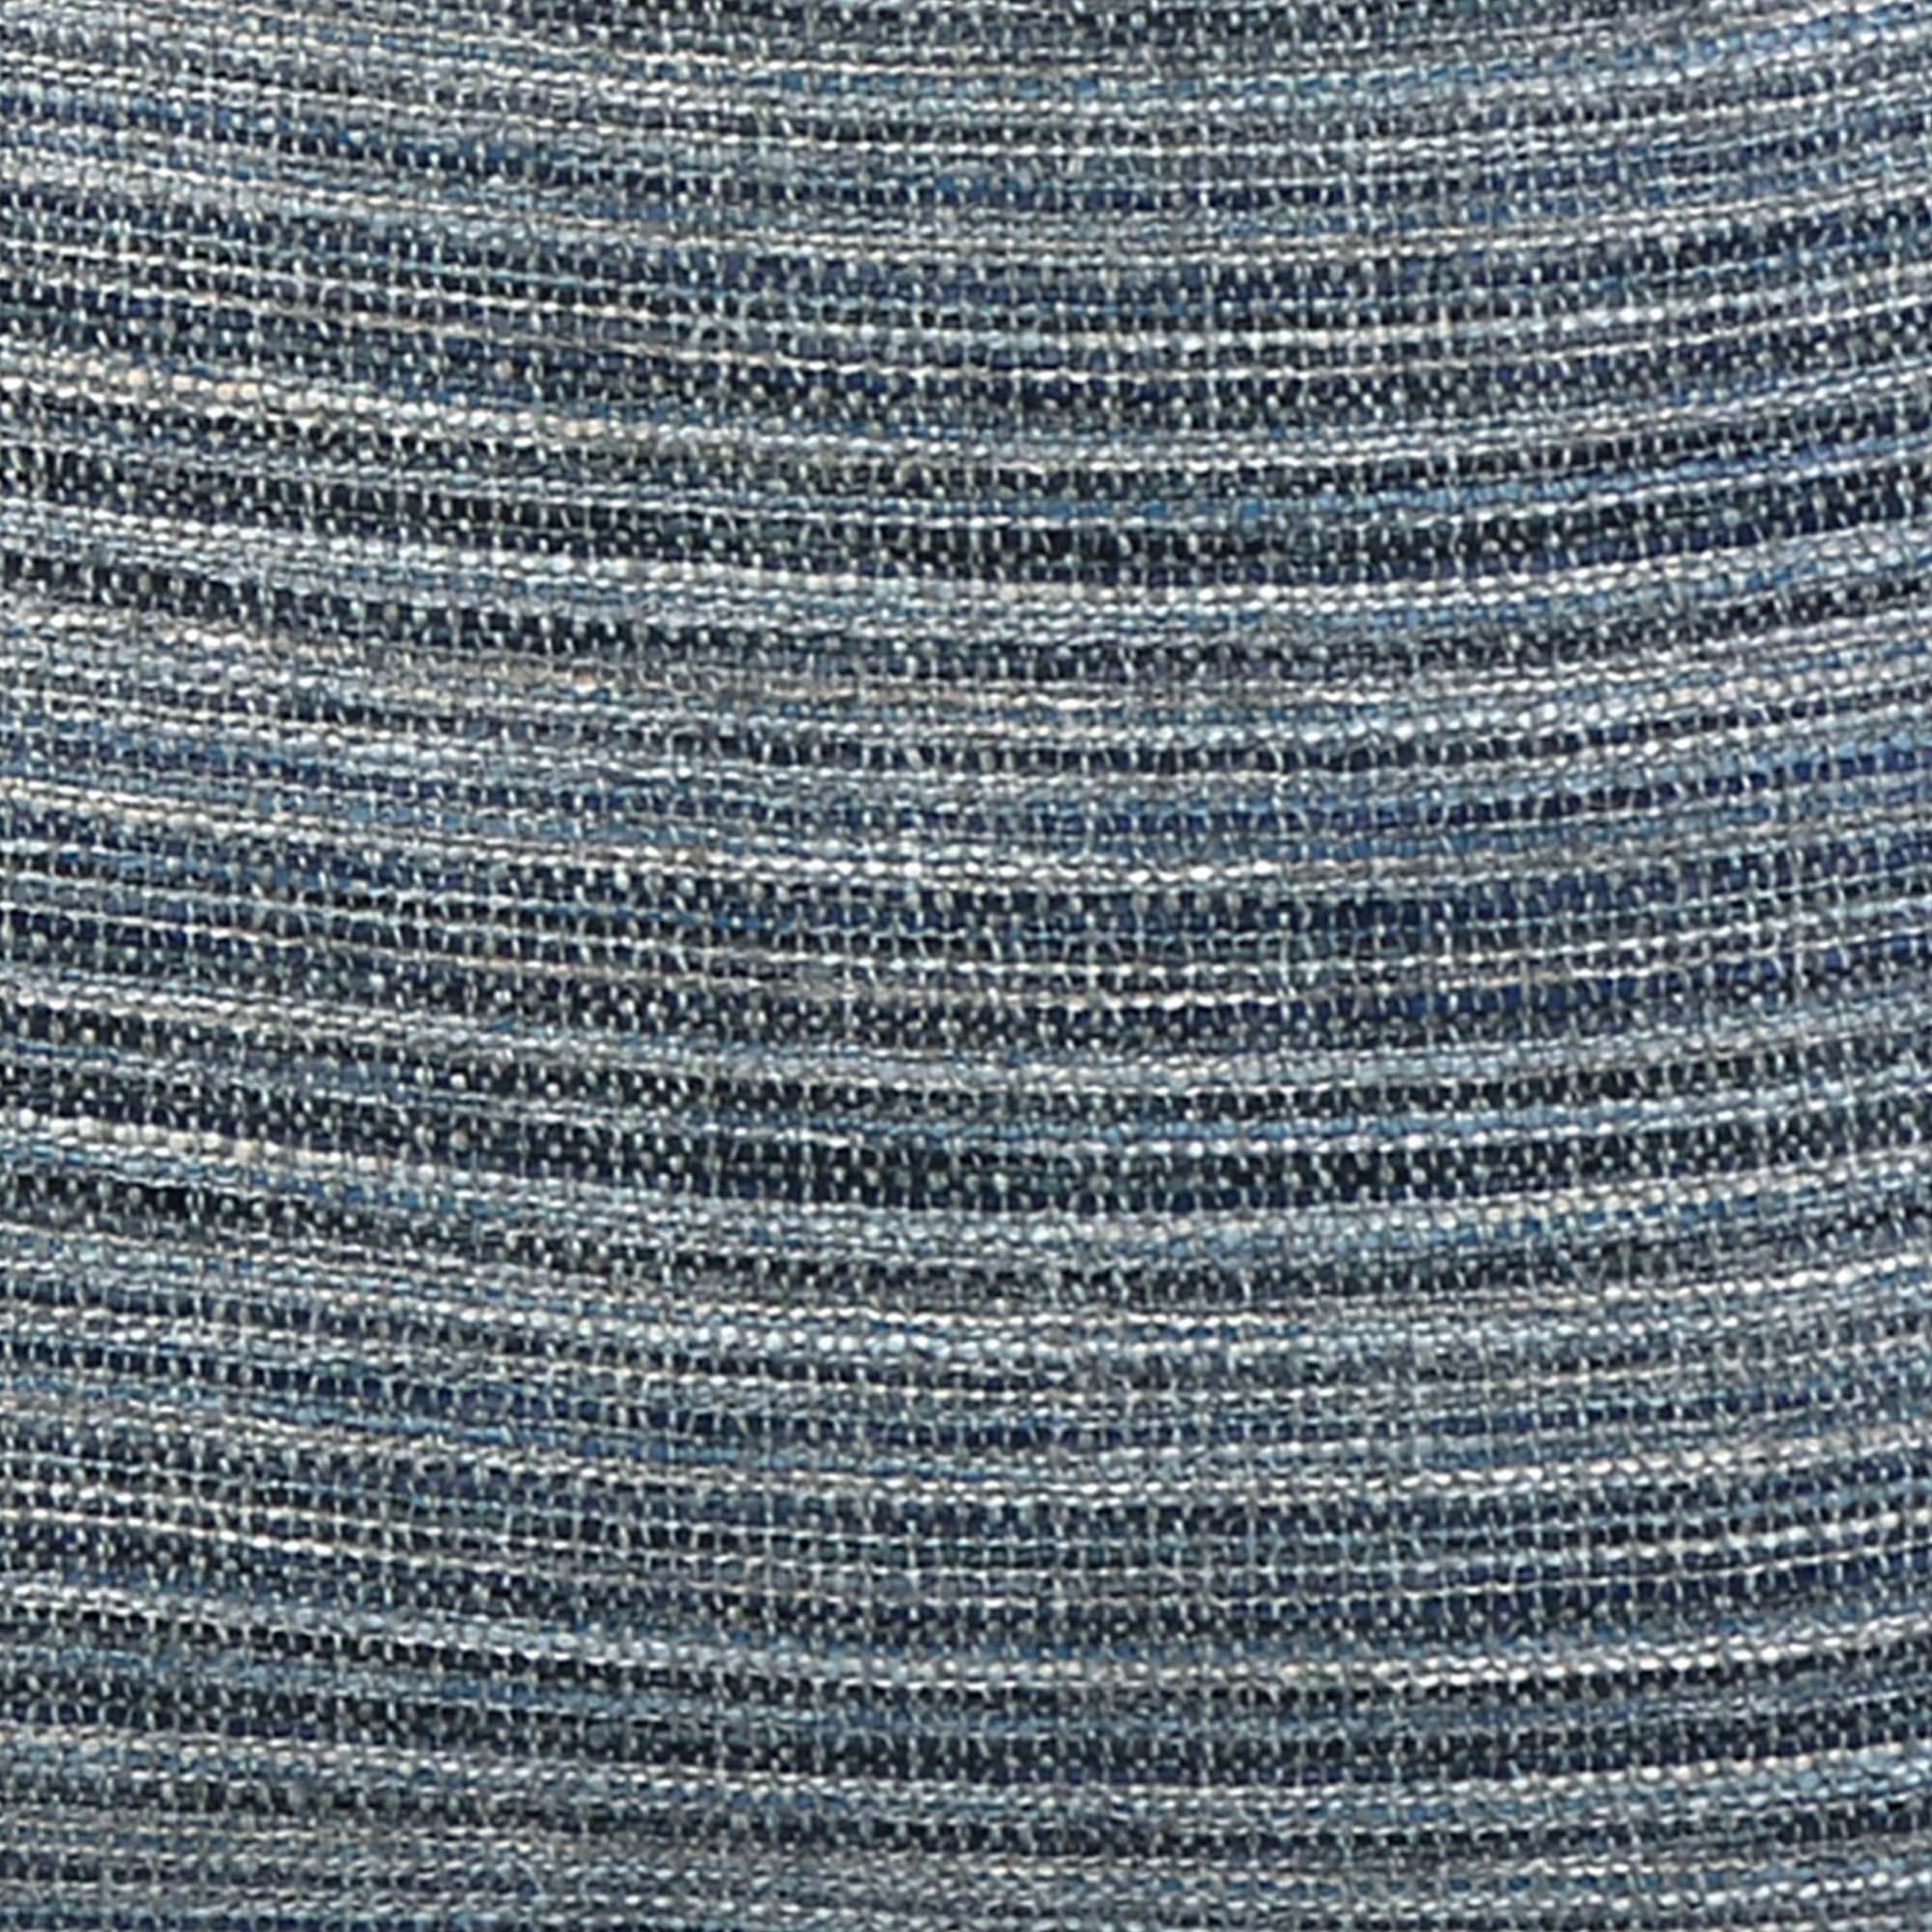 Formentera Denim / 4x4 inch Fabric Swatch